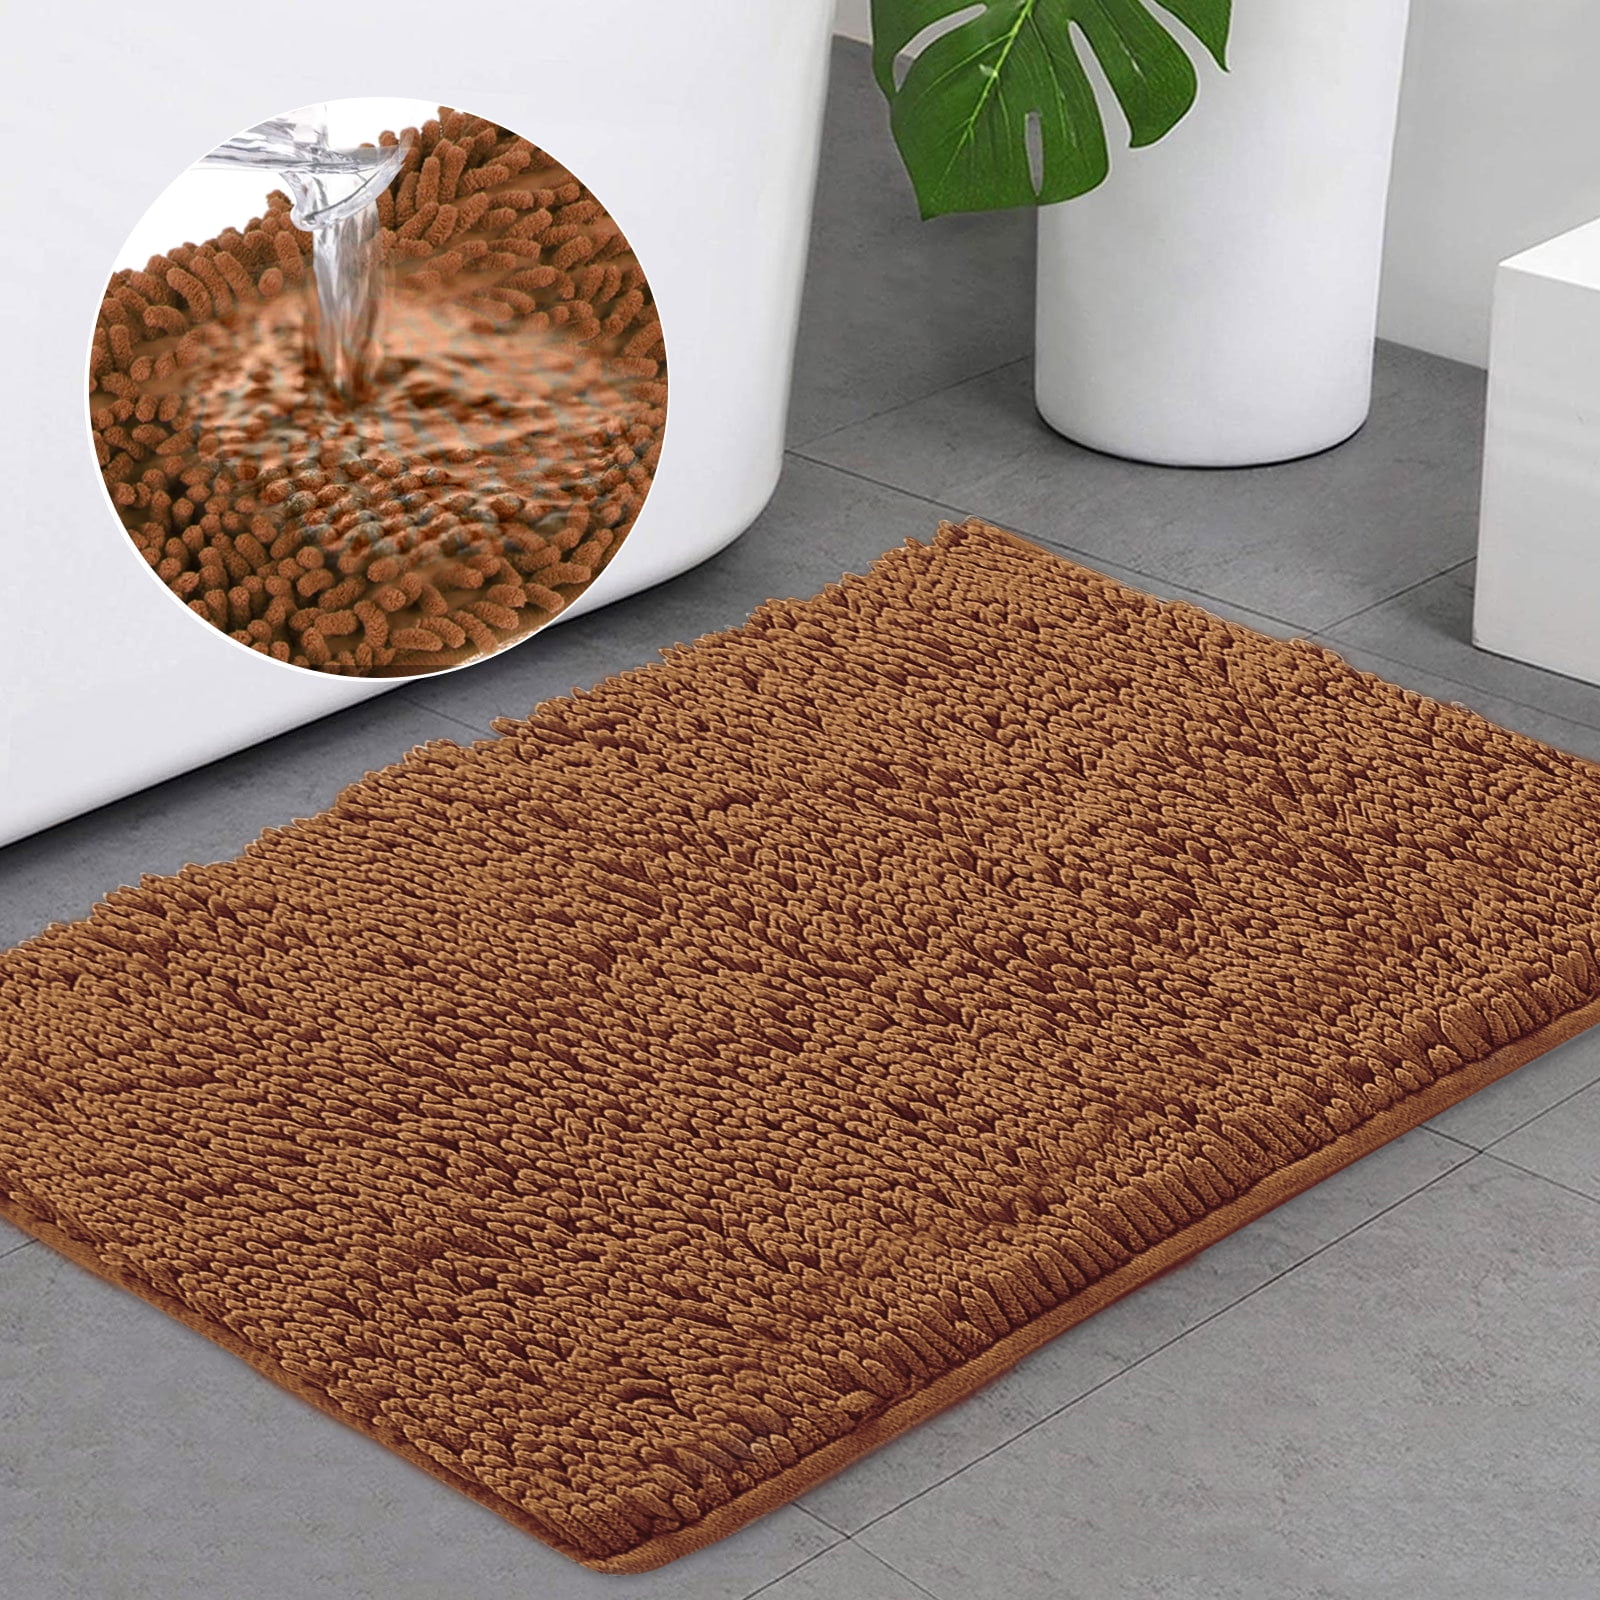 24x16" Marble Pattern Non-slip Door Floor Bathroom Rug Mat Home Decor Carpet 